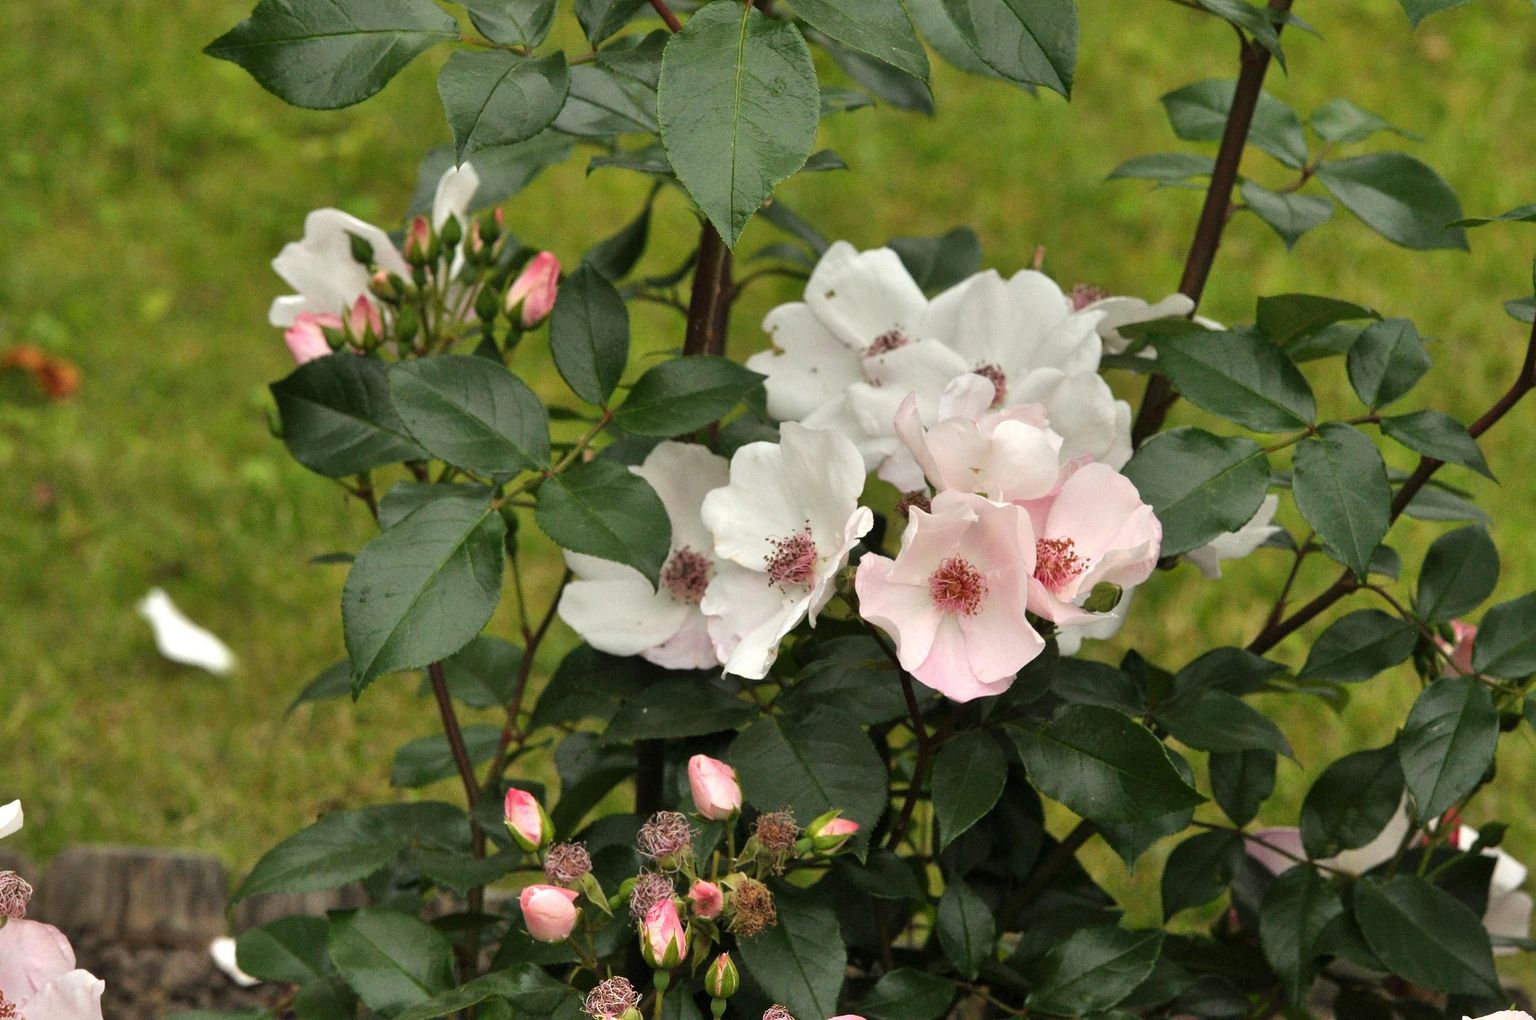 lihtõieline roos "Sweet Pretty" (Hansaplant)